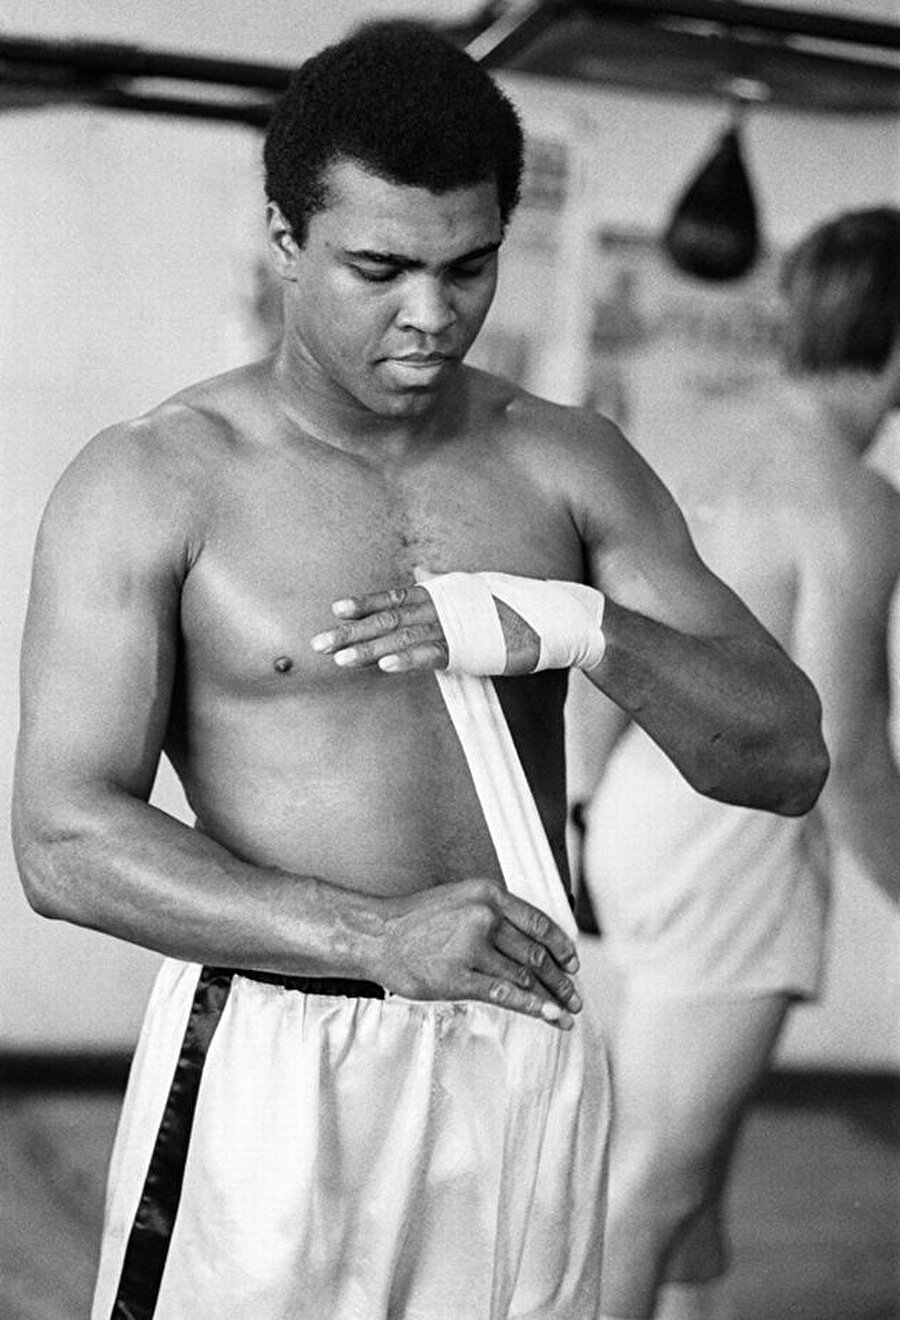 3 yıl ara verdi

                                    
                                    
                                    
                                    Muhammed Ali, 1967-1970 yıllarında boksa mecburen ara verdi. Ailesinin yardımı ve üniversitelerde para karşılığı yaptığı konuşmalarla geçimini sağlayan Muhammed Ali, 1970 yılında açtığı temyiz davasını kazandı ve ringlere döndü.
                                
                                
                                
                                